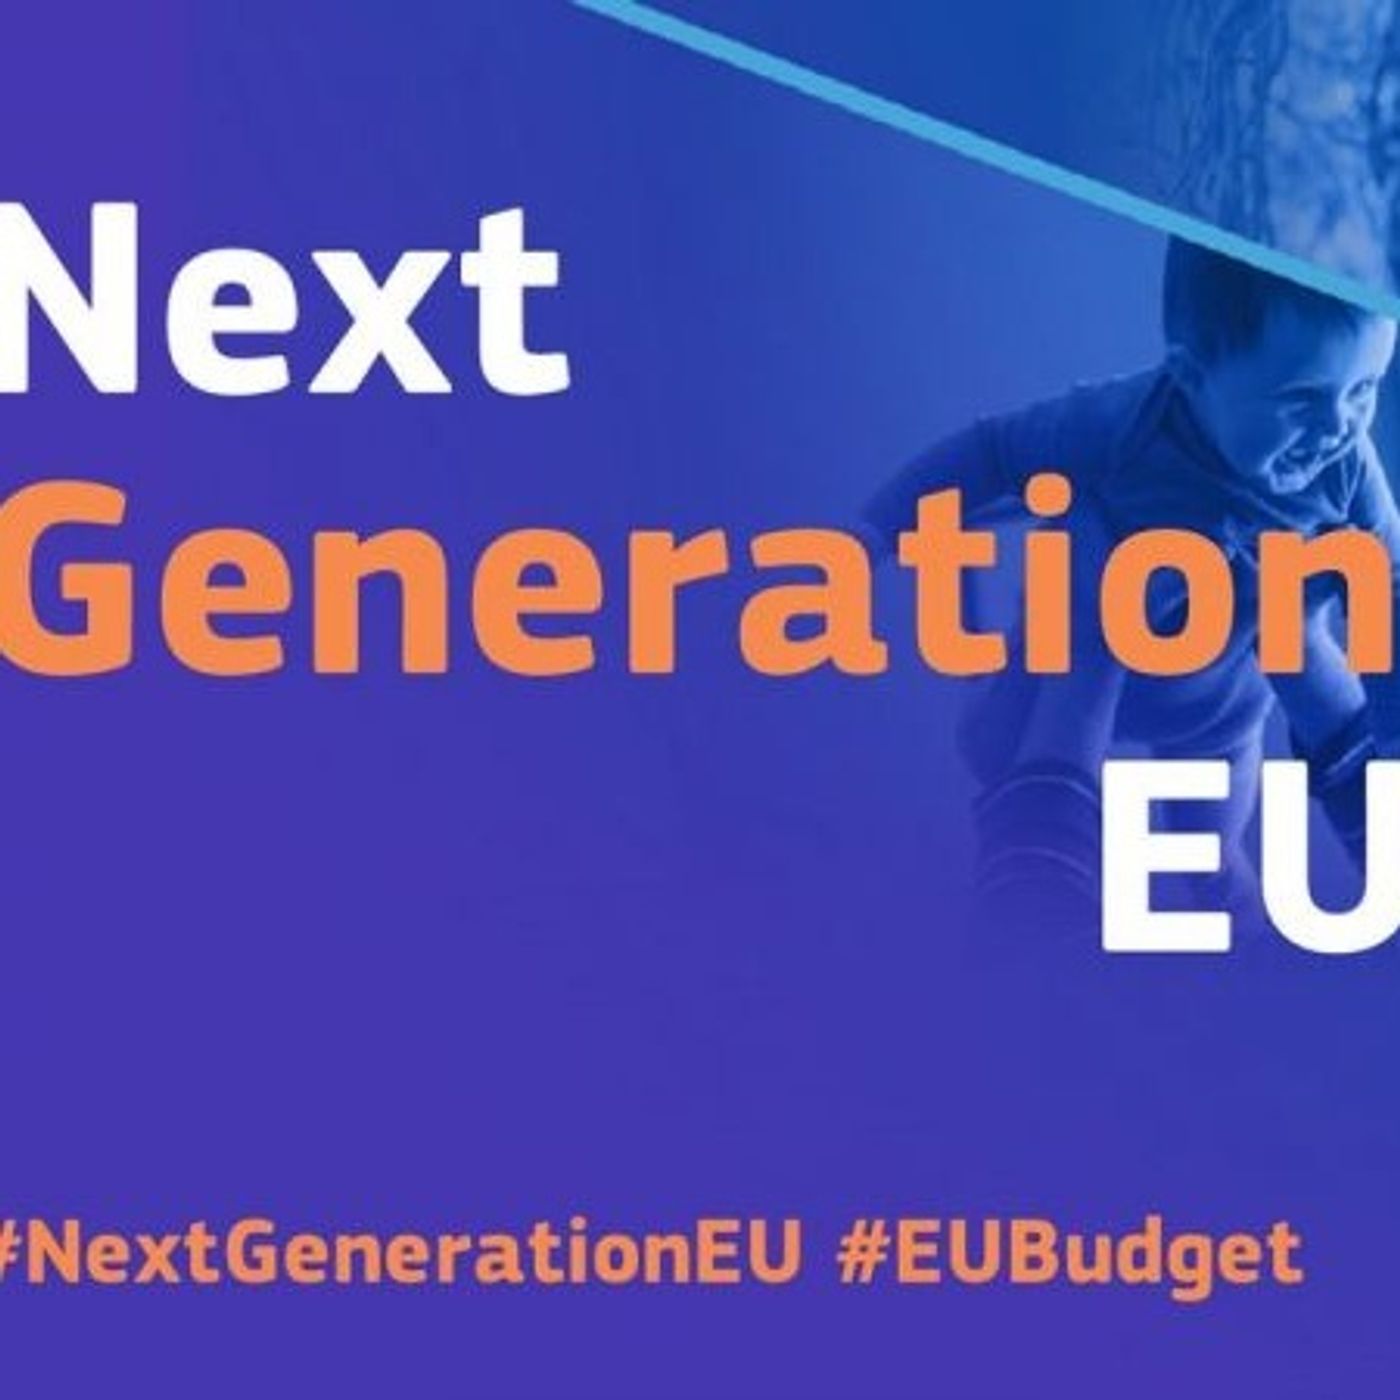 OPEN SOURCE | EPISODIO 11 - Next Generation EU e digitale: come stanno le cose?